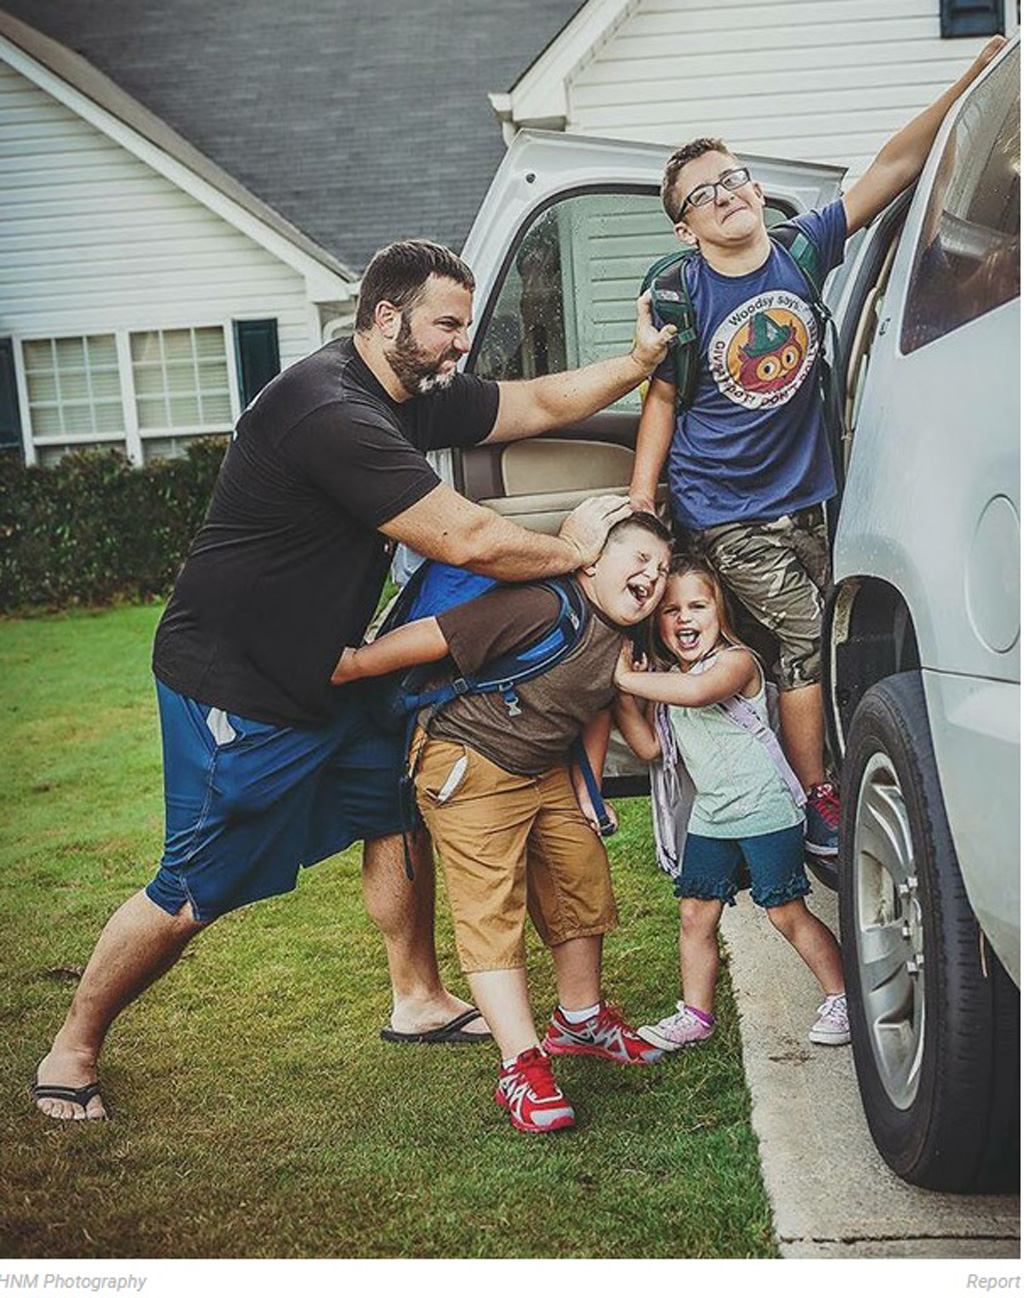 Rộ trào lưu bố mẹ chụp ảnh mừng hét lớn khi hết hè 2